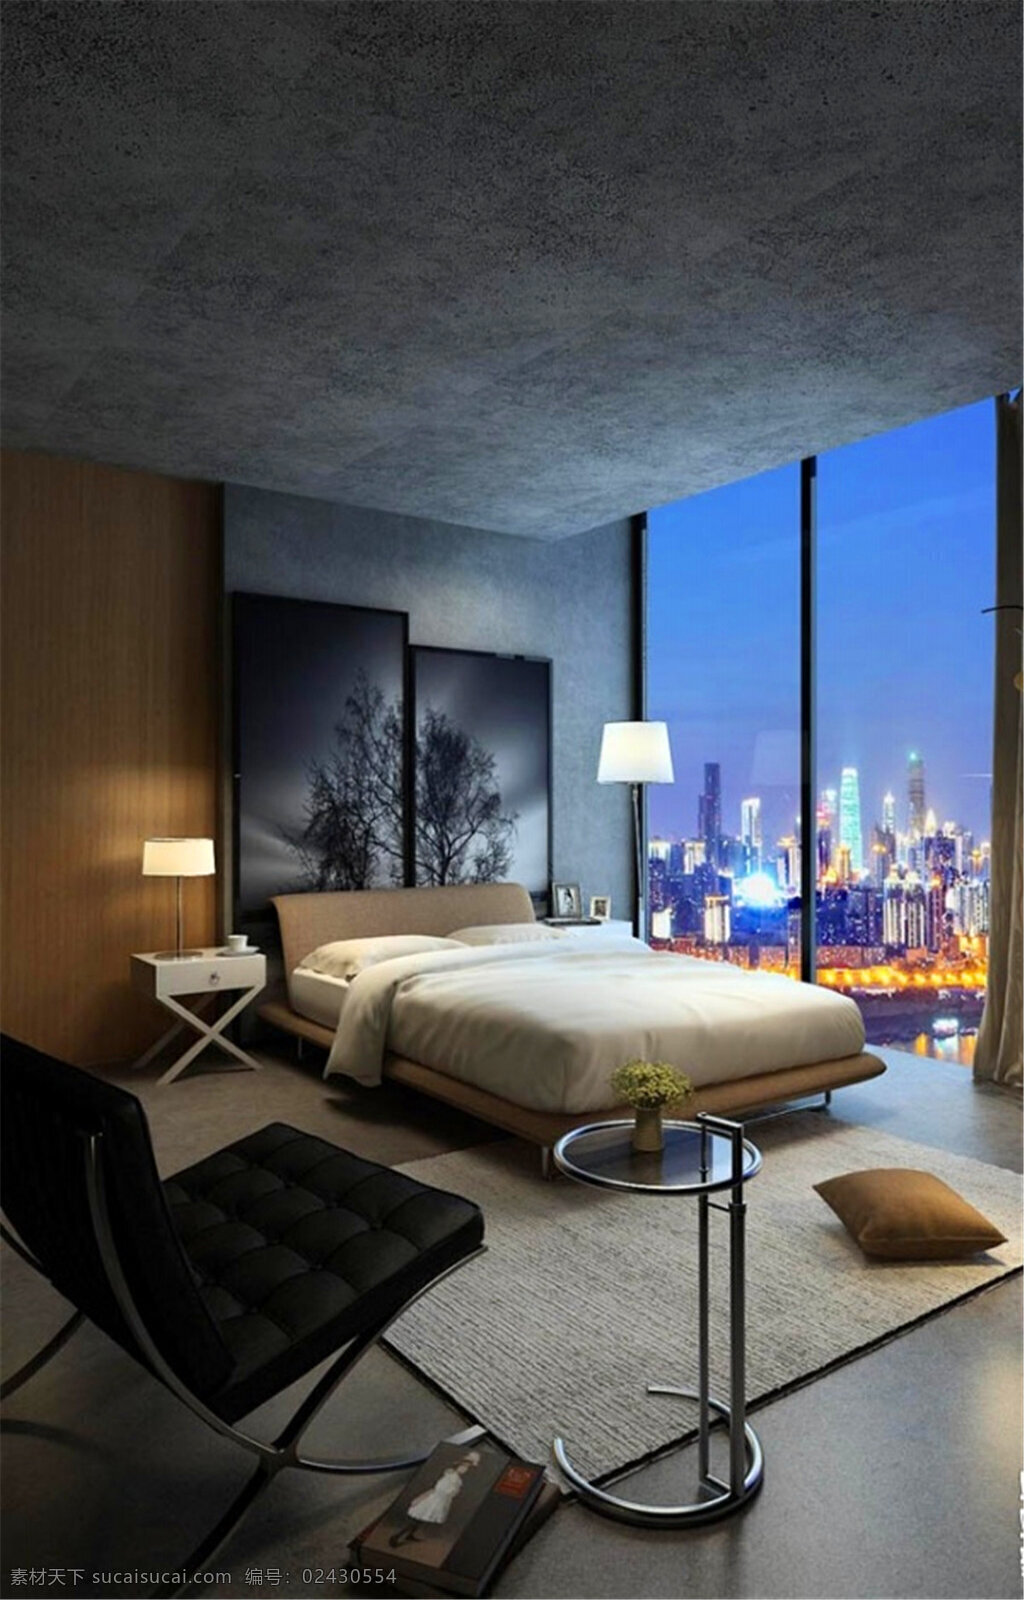 现代艺术 个性 卧室 模型 家居 家居生活 室内设计 装修 室内 家具 装修设计 环境设计 效果图 max 3d 现代 艺术 大床 落地窗